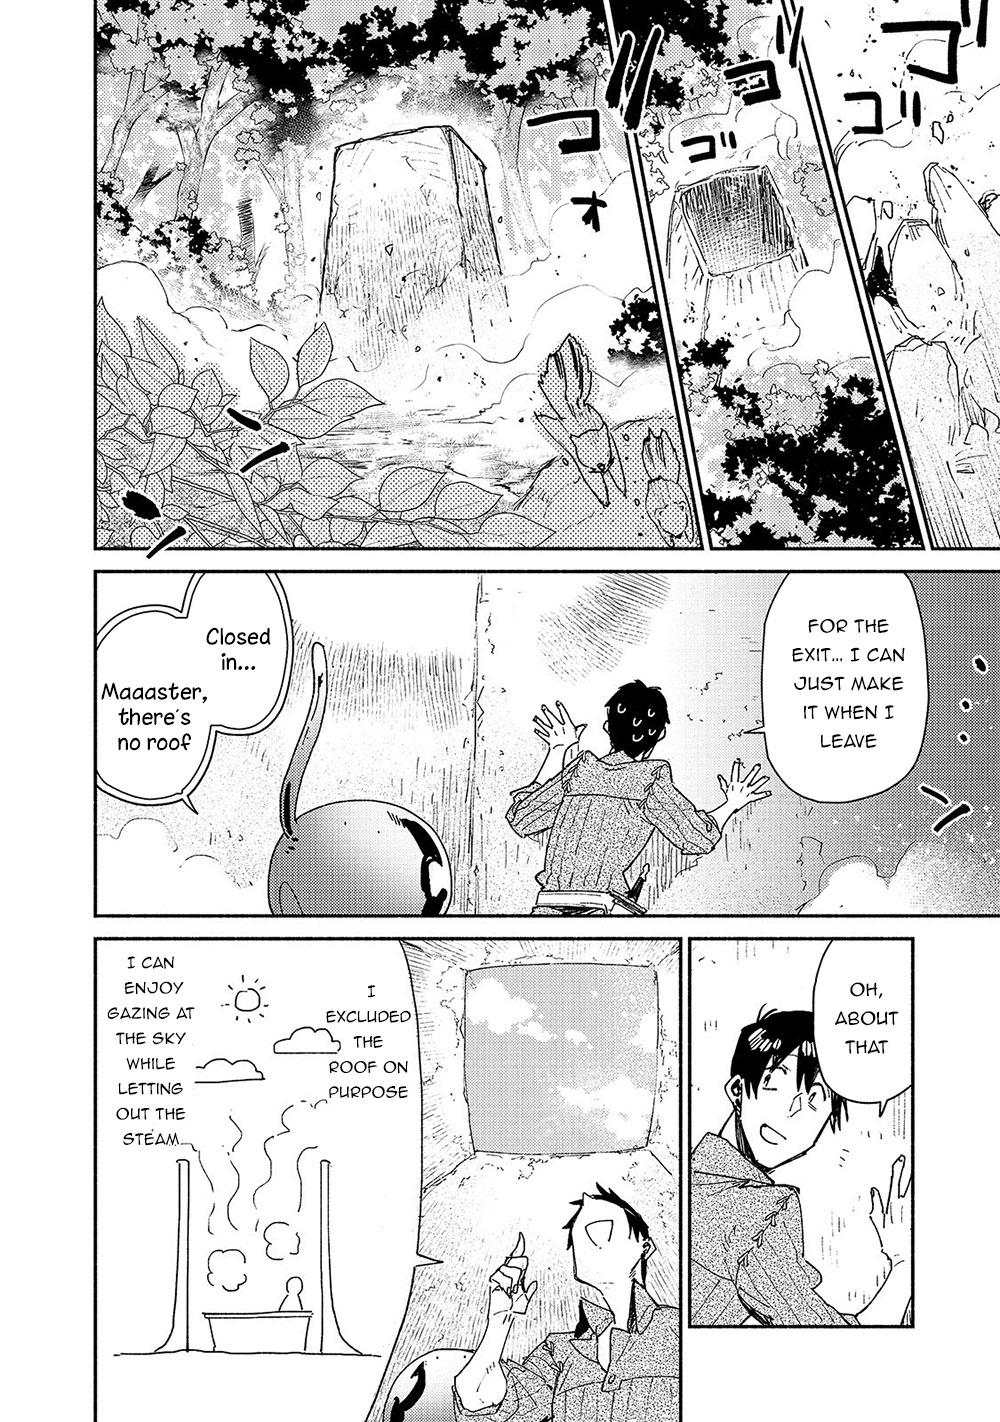 Tondemo Skill de Isekai Hourou Meshi: Sui no Daibouken Manga - Chapter 31 -  Manga Rock Team - Read Manga Online For Free